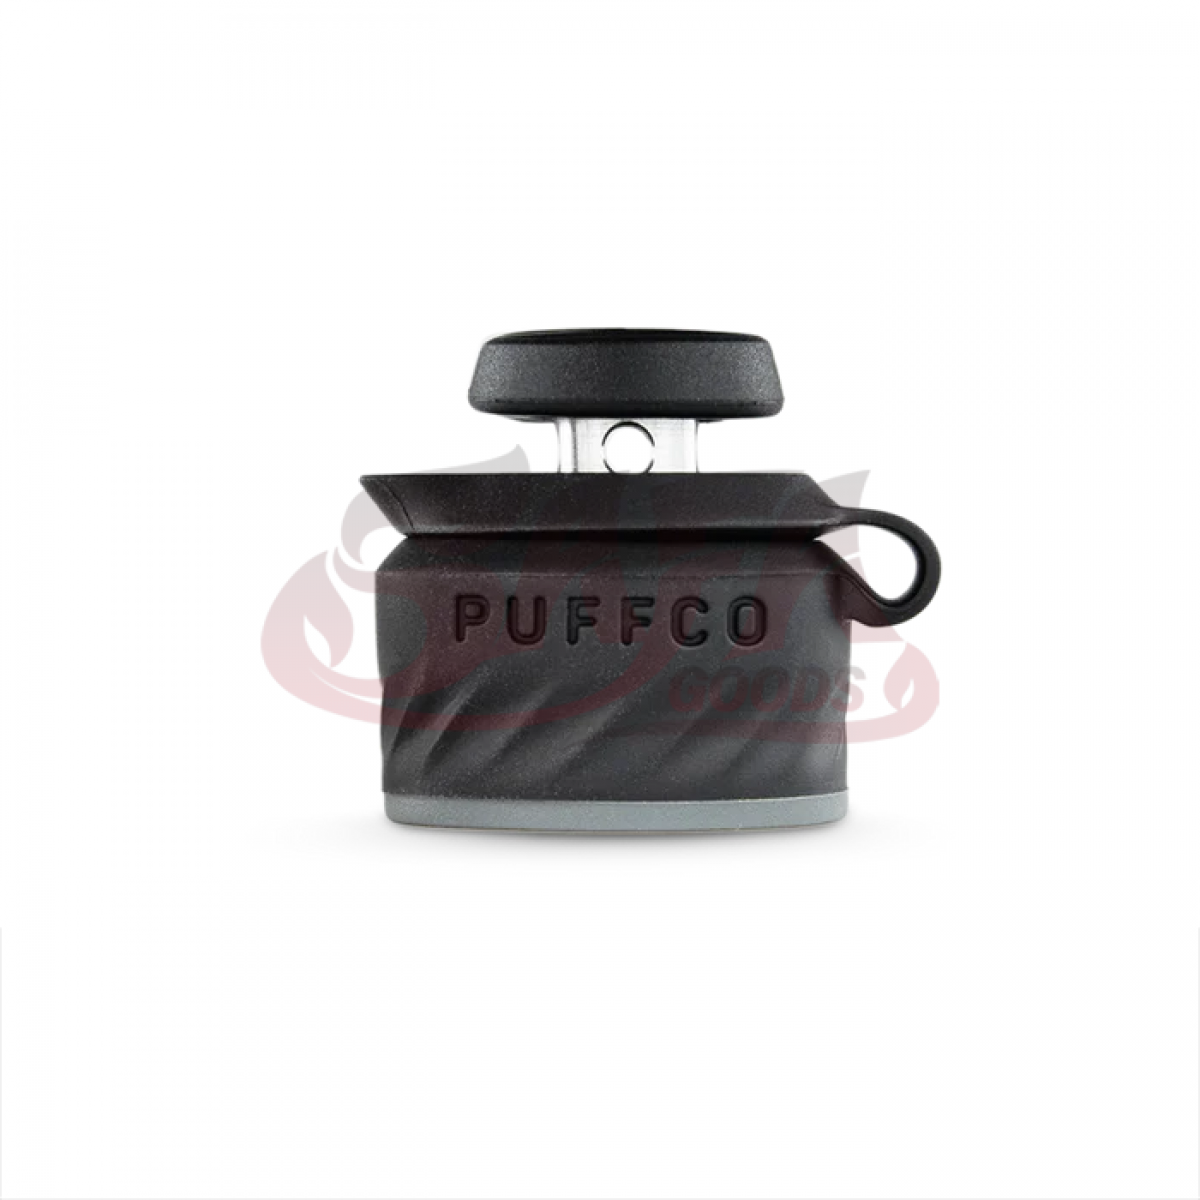 Puffco Peak Pro - Joystick Carb Cap